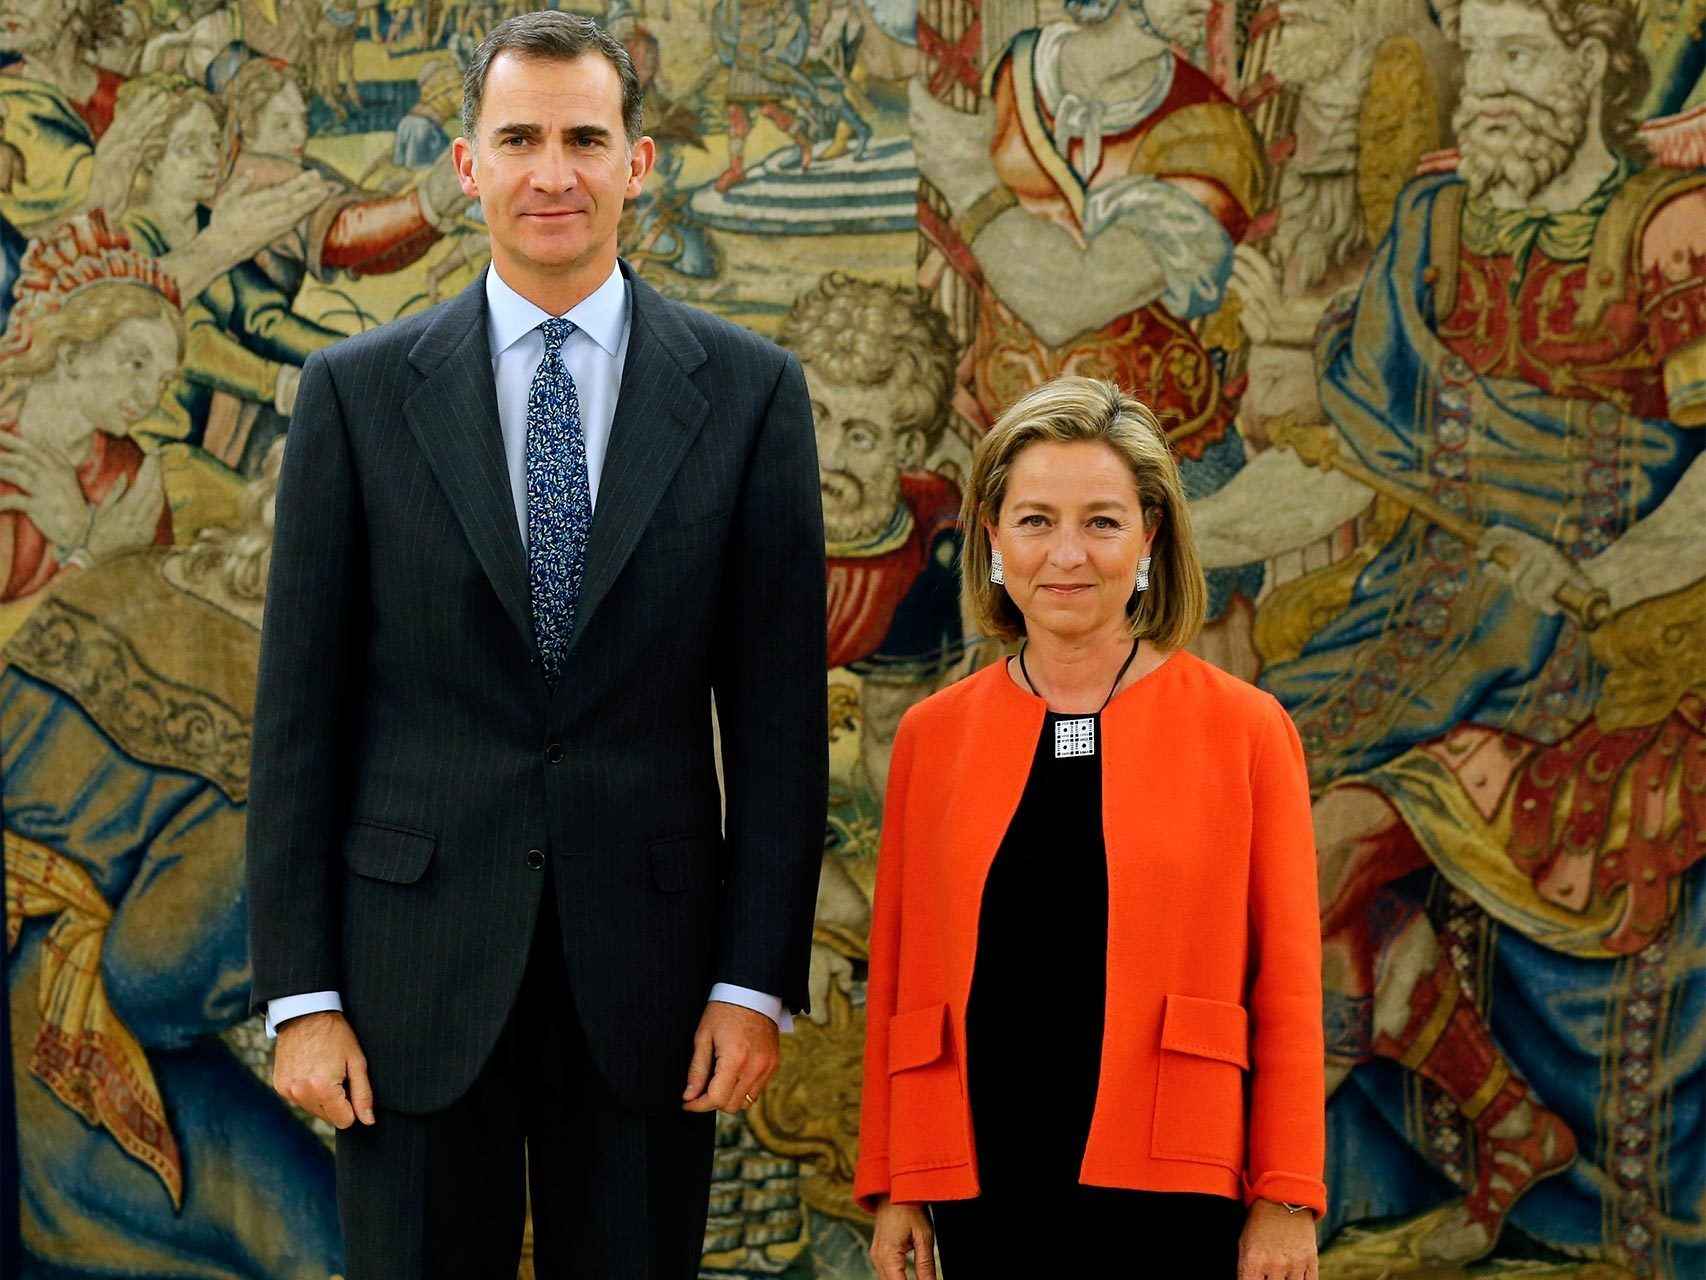 La diputada de Coalición Canaria Ana Oramas, con el rey Felipe VI.